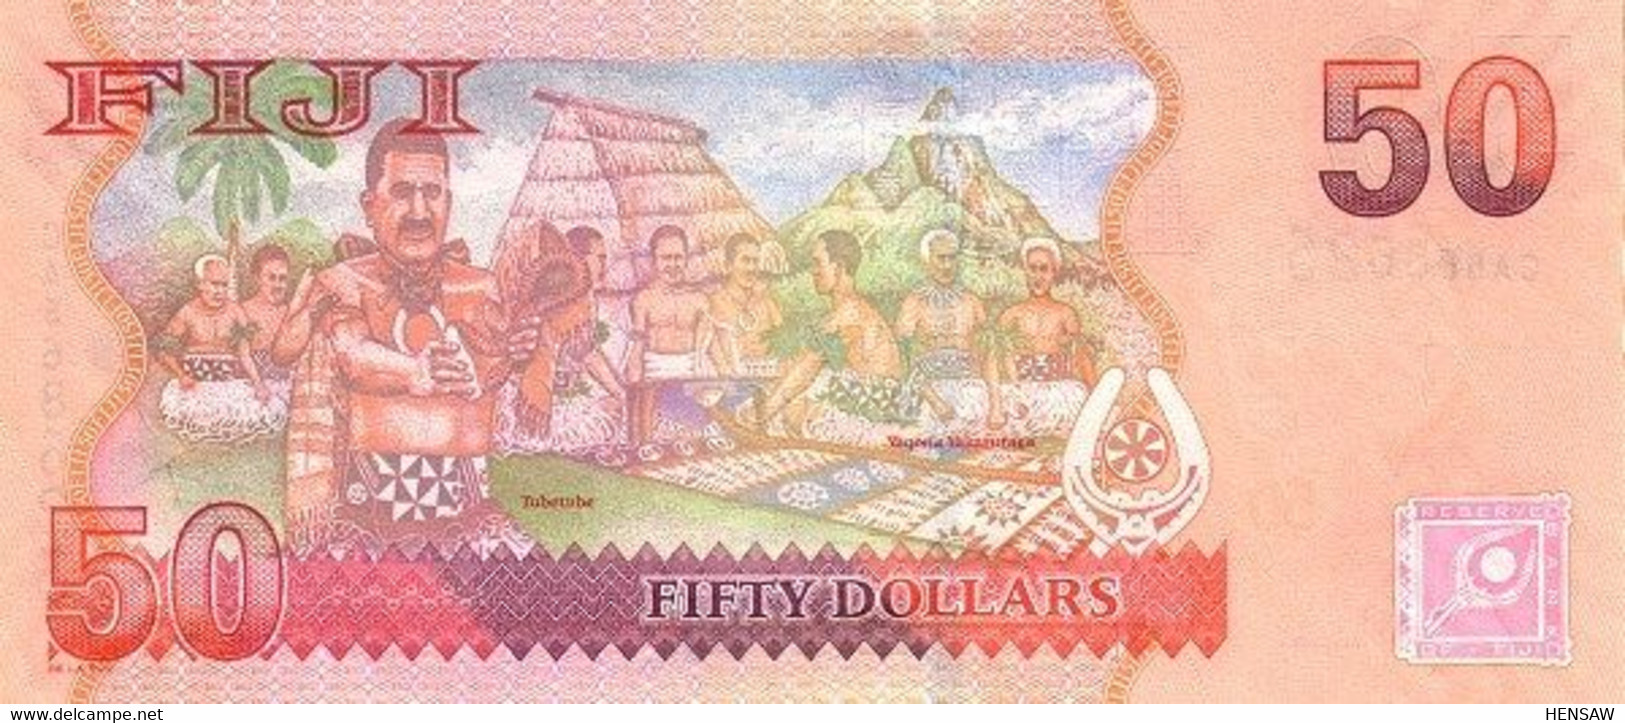 FIJI 50 DOLLARS P 113 2007 UNC SC NUEVO - Figi